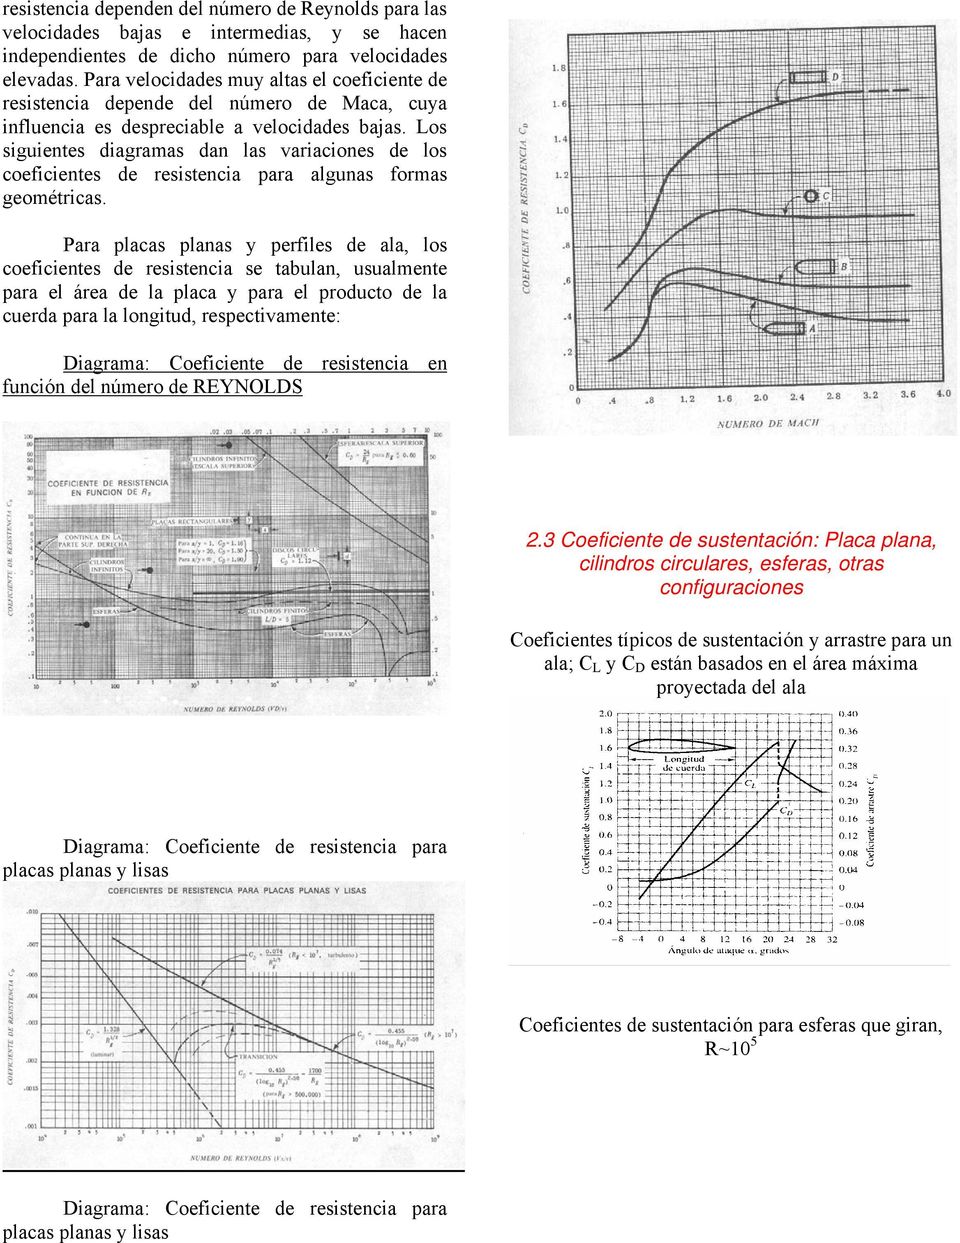 Los sigientes diagramas dan las variaciones de los coeficientes de resistencia para algnas formas geométricas.